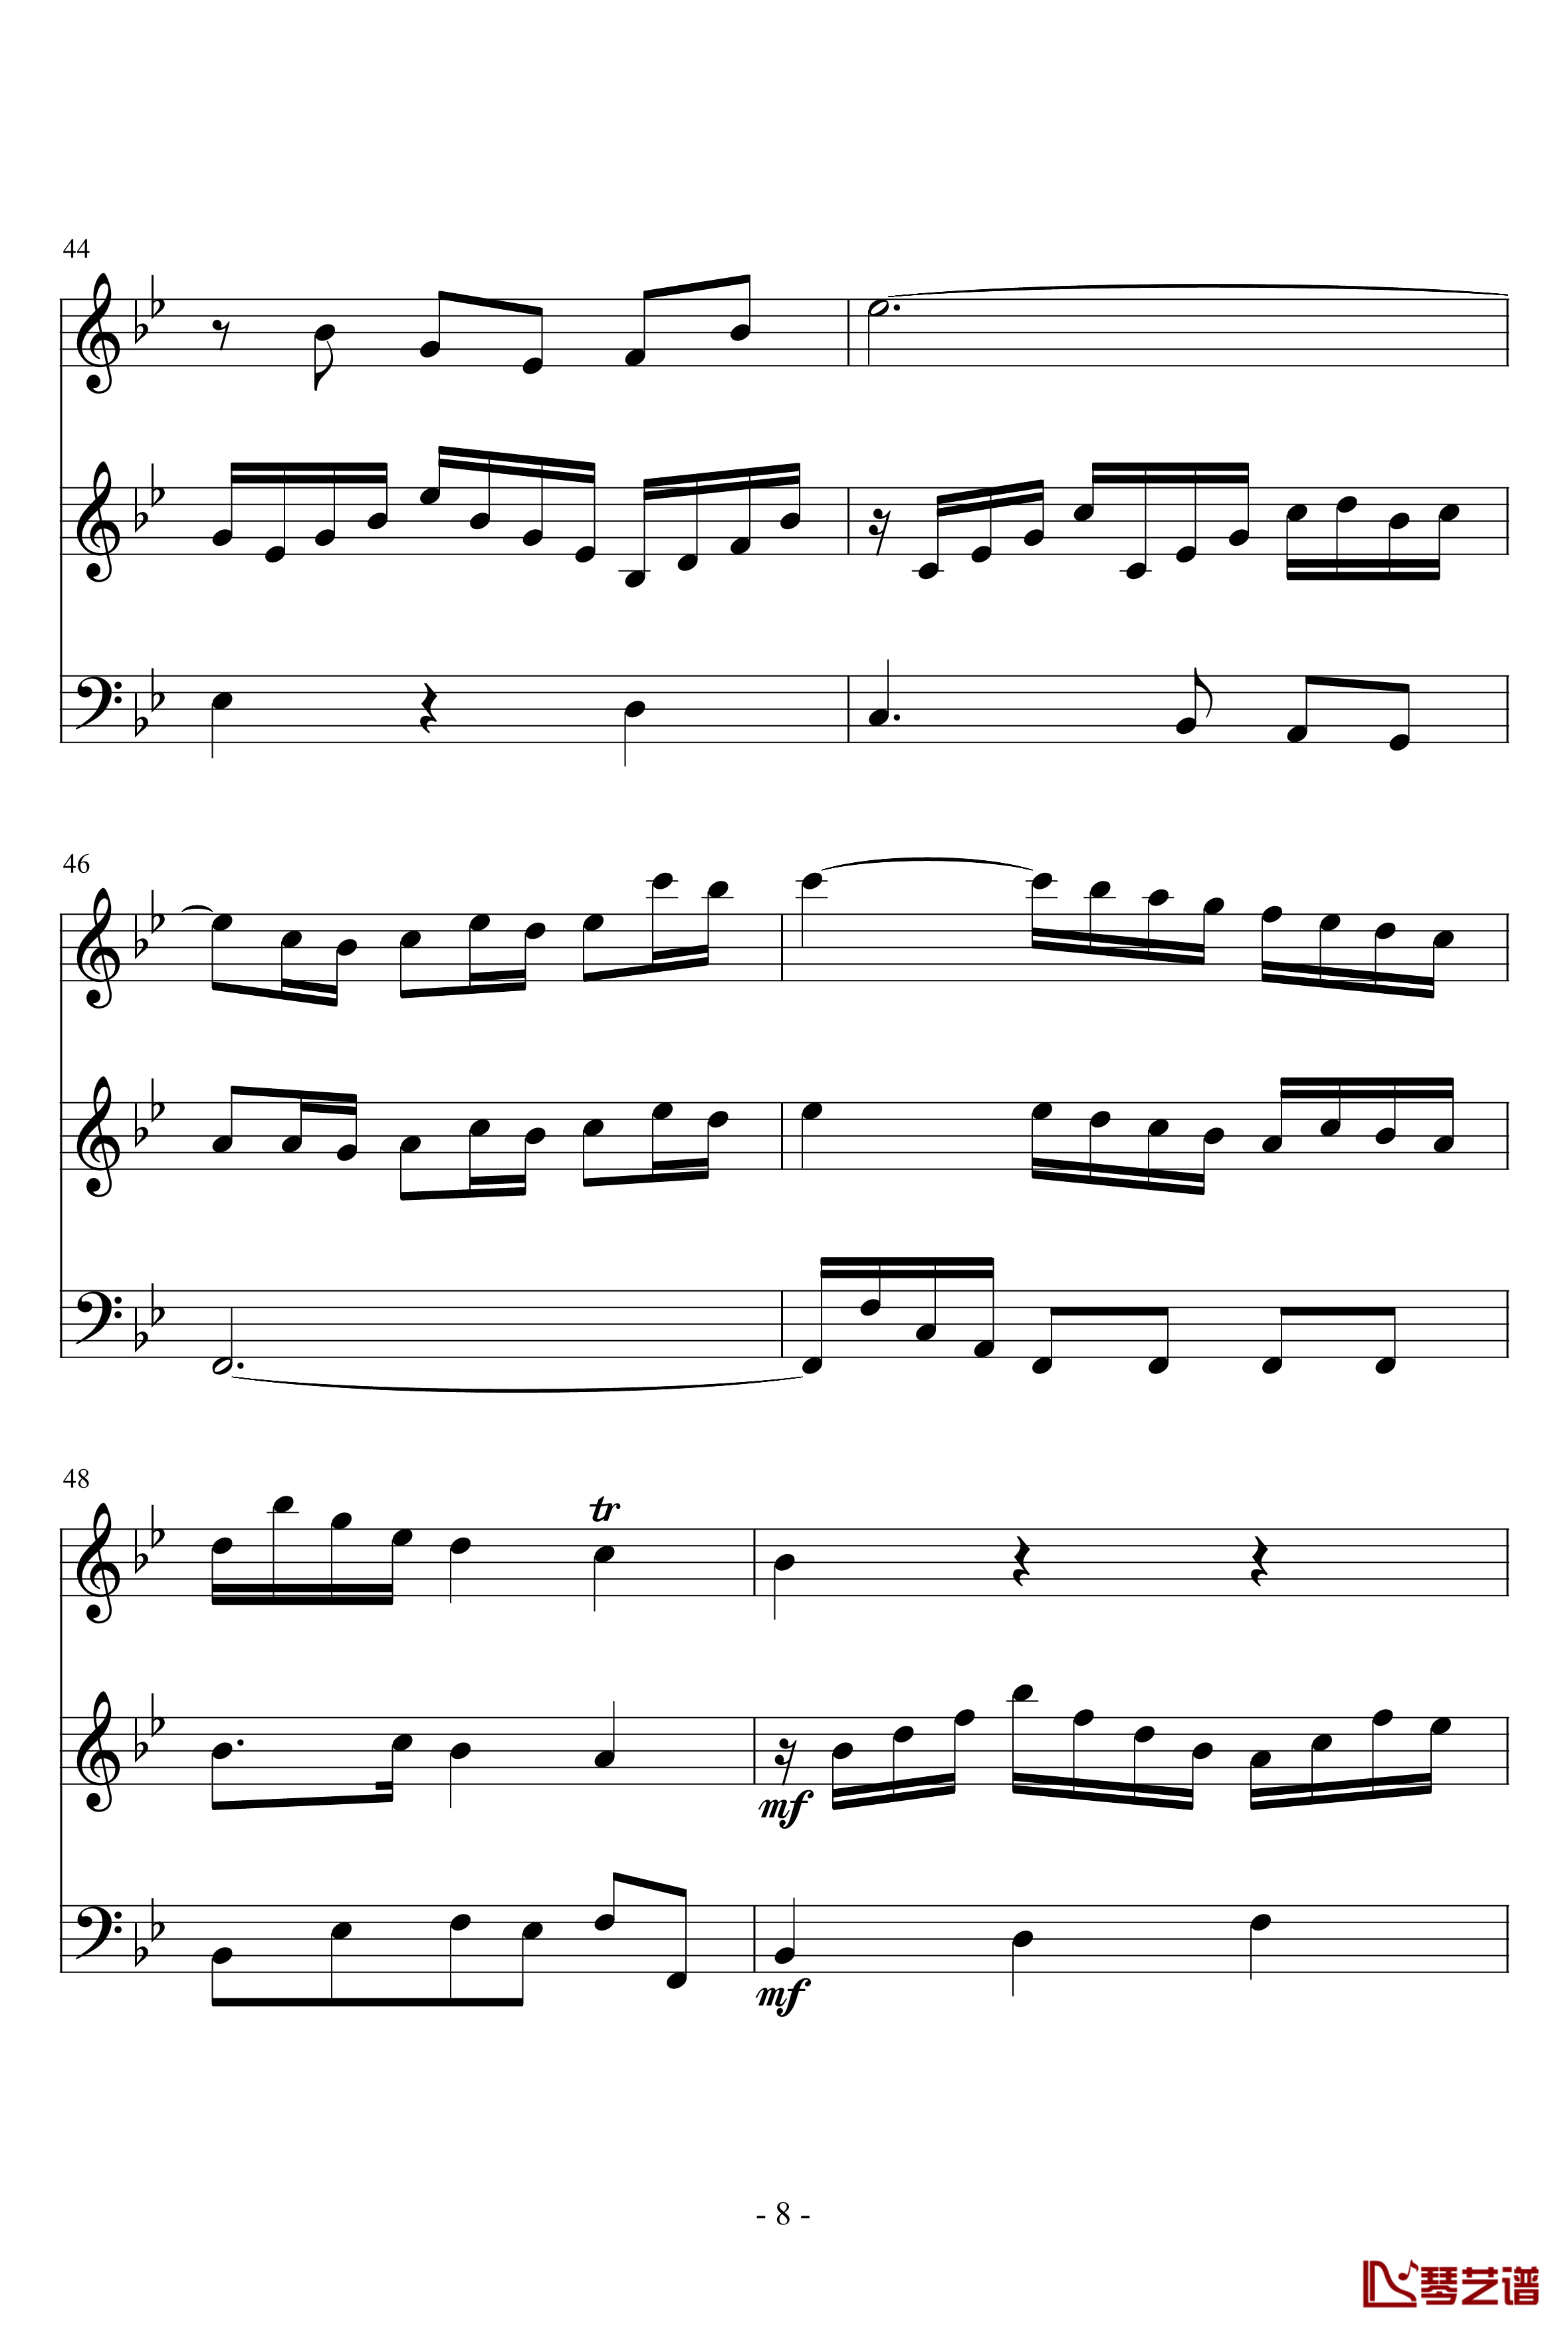 长笛与羽管键琴奏鸣曲第一乐章钢琴谱-巴赫-P.E.Bach8